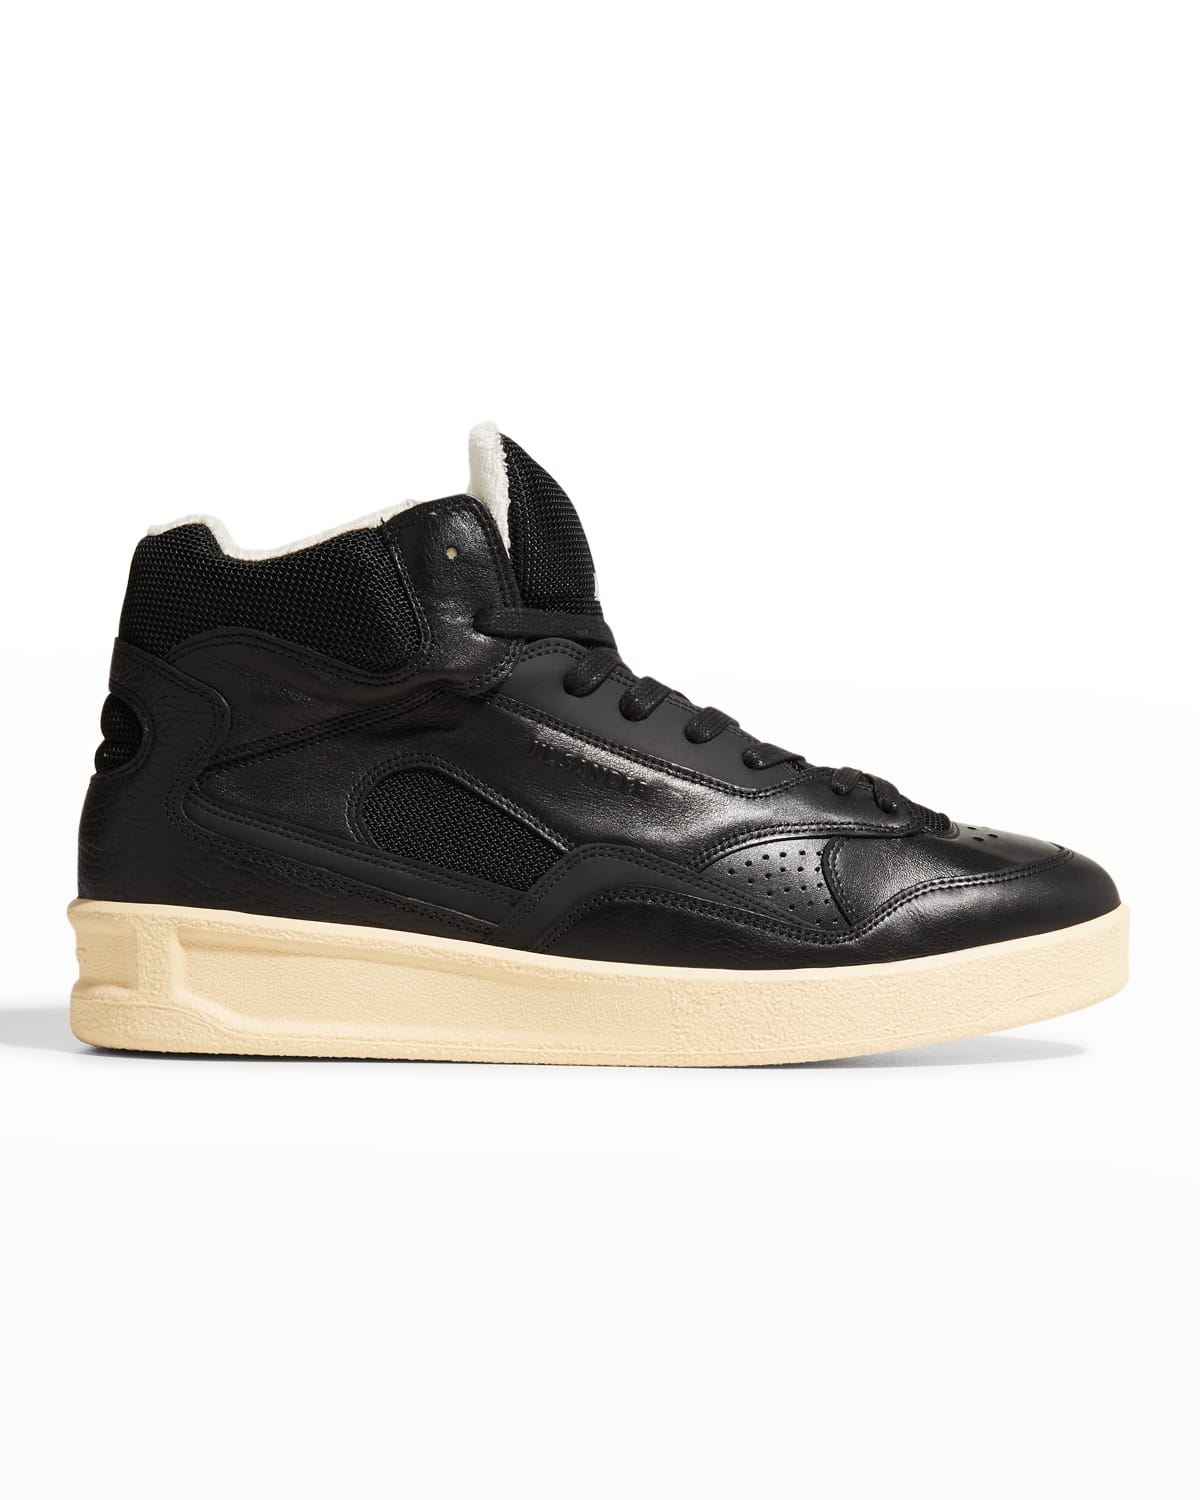 Jil Sander Men's Basket High-Top Leather Sneakers